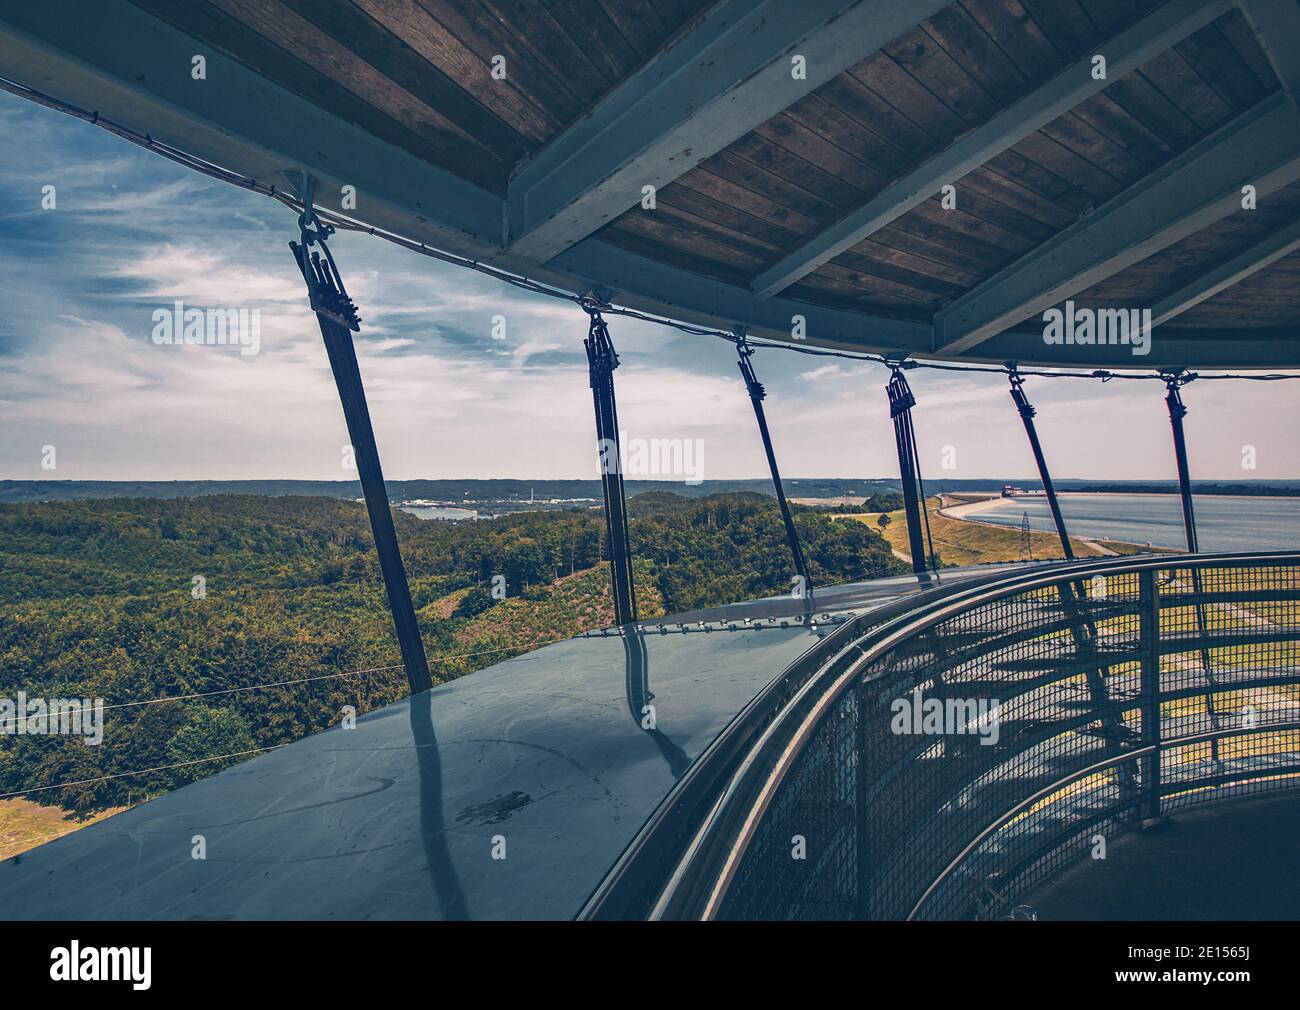 Aussichtsturm Panorama Poster Blick auf die wunderschöne Landschaft in Lubkowo bei strahlendem Sonnenschein. Leuchtturm Aussichtsplattform am Horizont Stock Photo